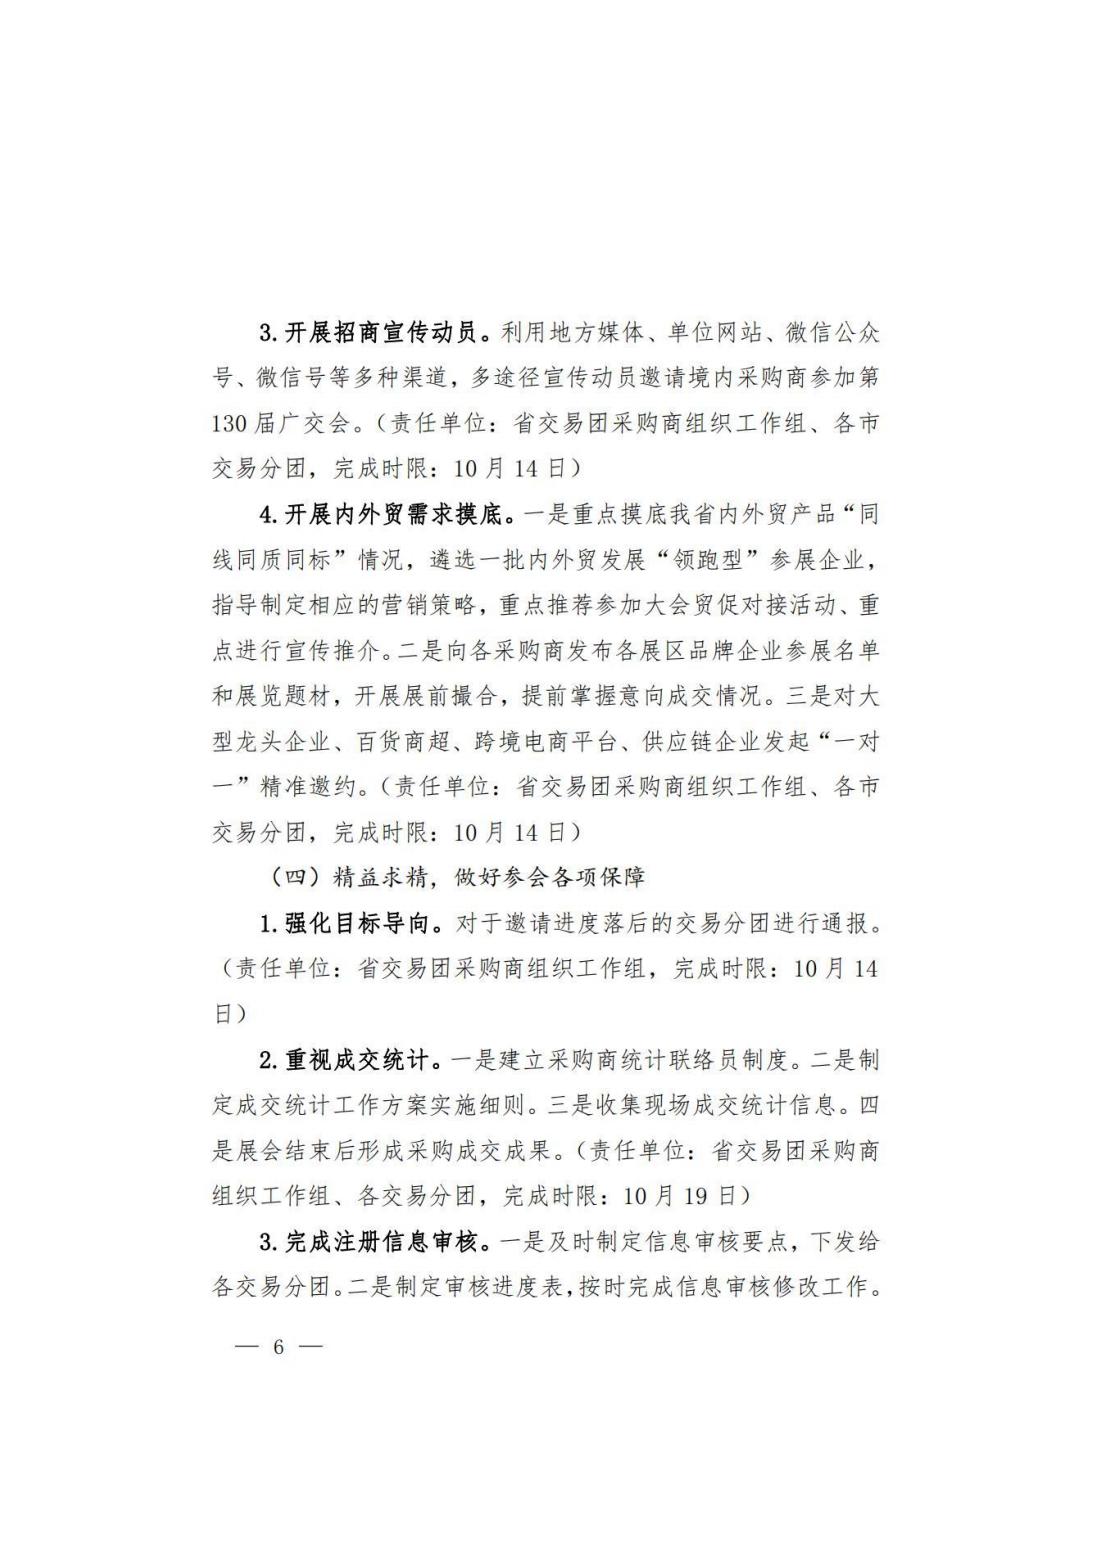 关于转发商务厅《第 130 届中国进出口商品交易会山西省交易团采购商组织实施方案》的通知(图7)